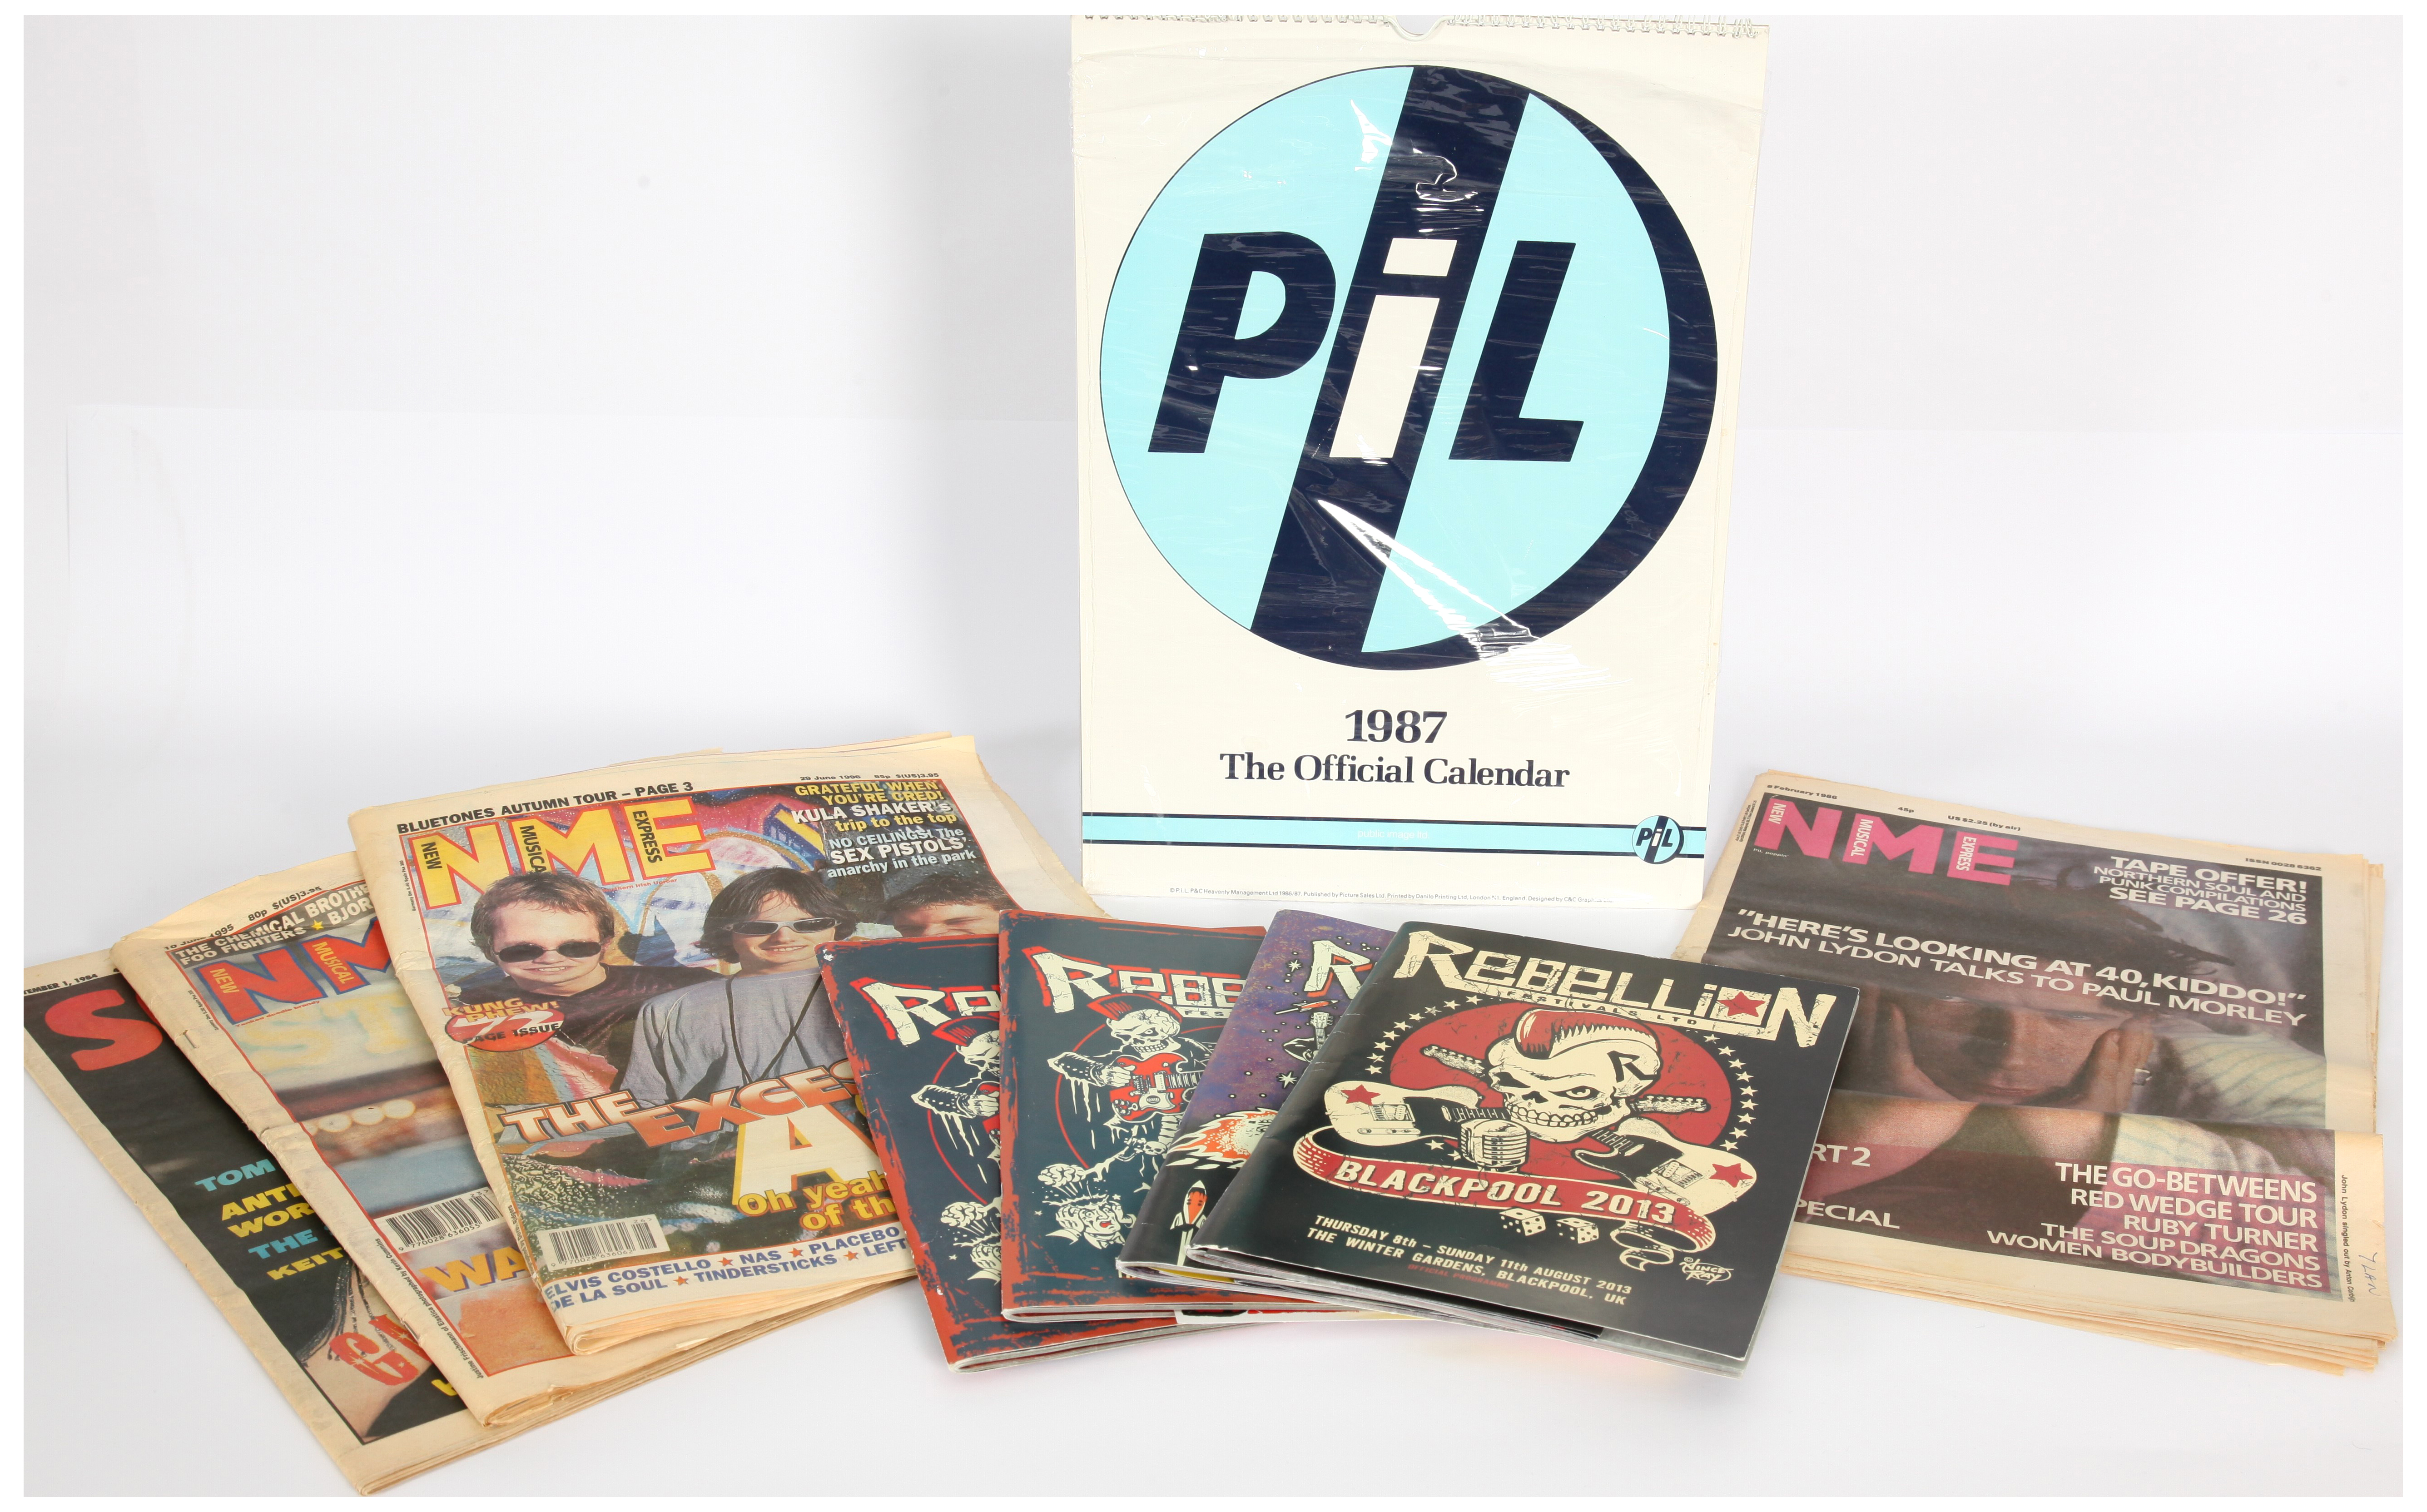 Sex Pistols and Public Image Related Vinyl - Bild 2 aus 2